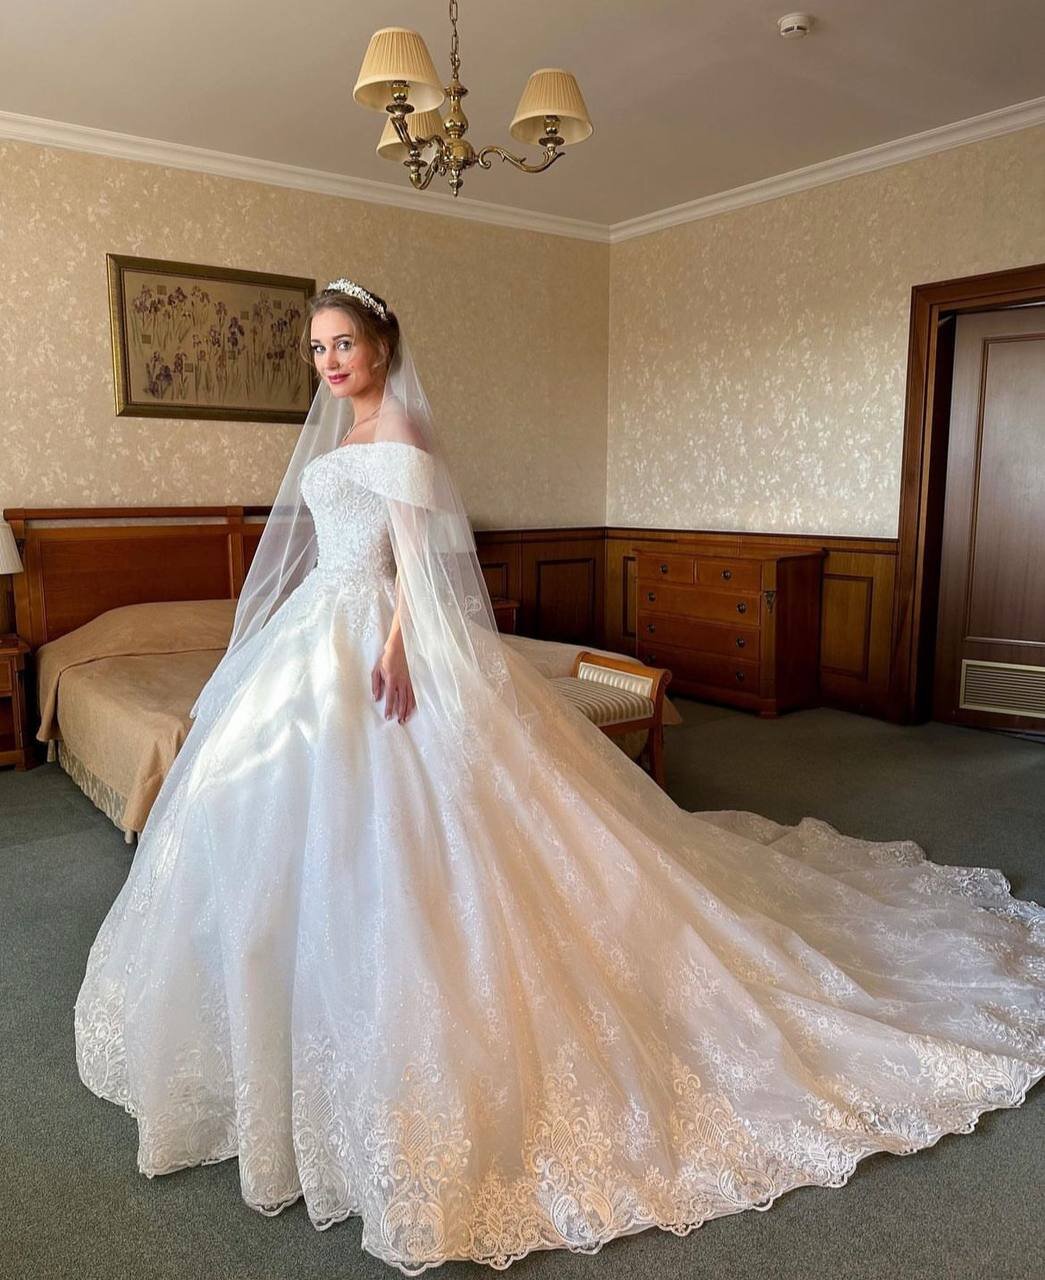 «Во второй раз»: Кристина Асмус в свадебном платье объявила об очередном замужестве. ТОП горячих фото похотливой невесты Кристины Асмус из постельных сцен без цензуры 18+